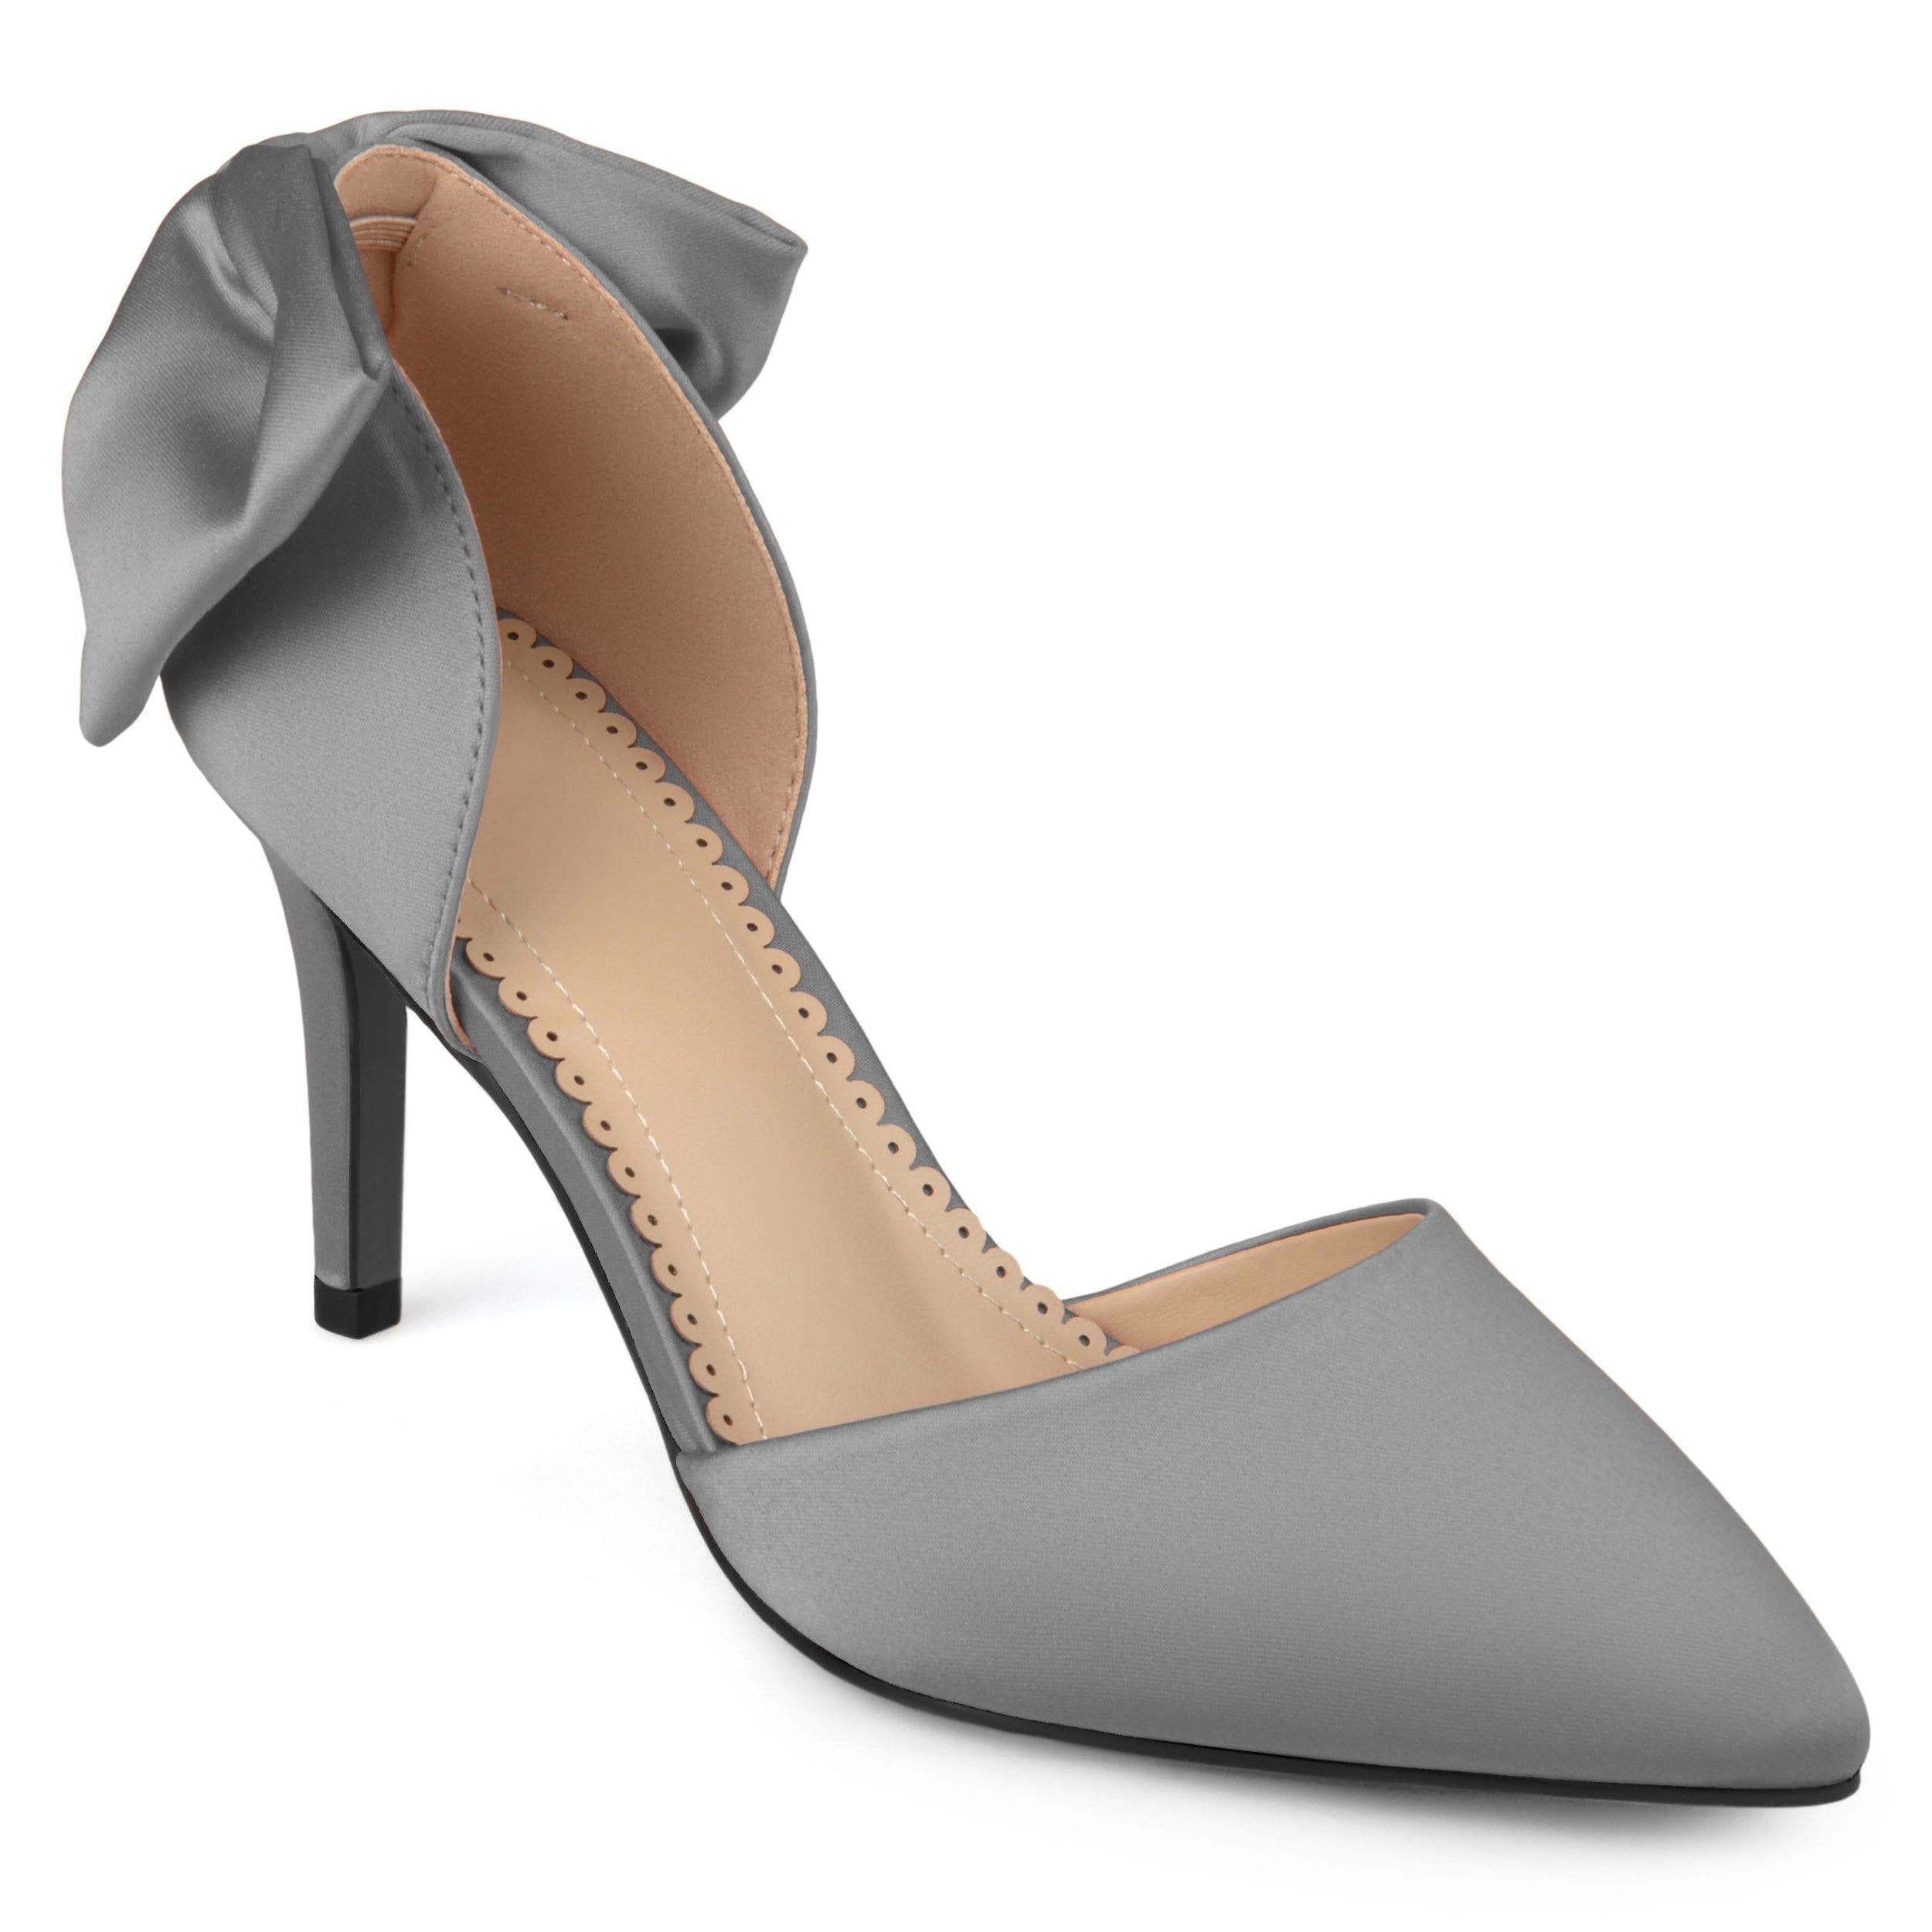 Sapatos elegantes | Heels, Fashion shoes, High heels